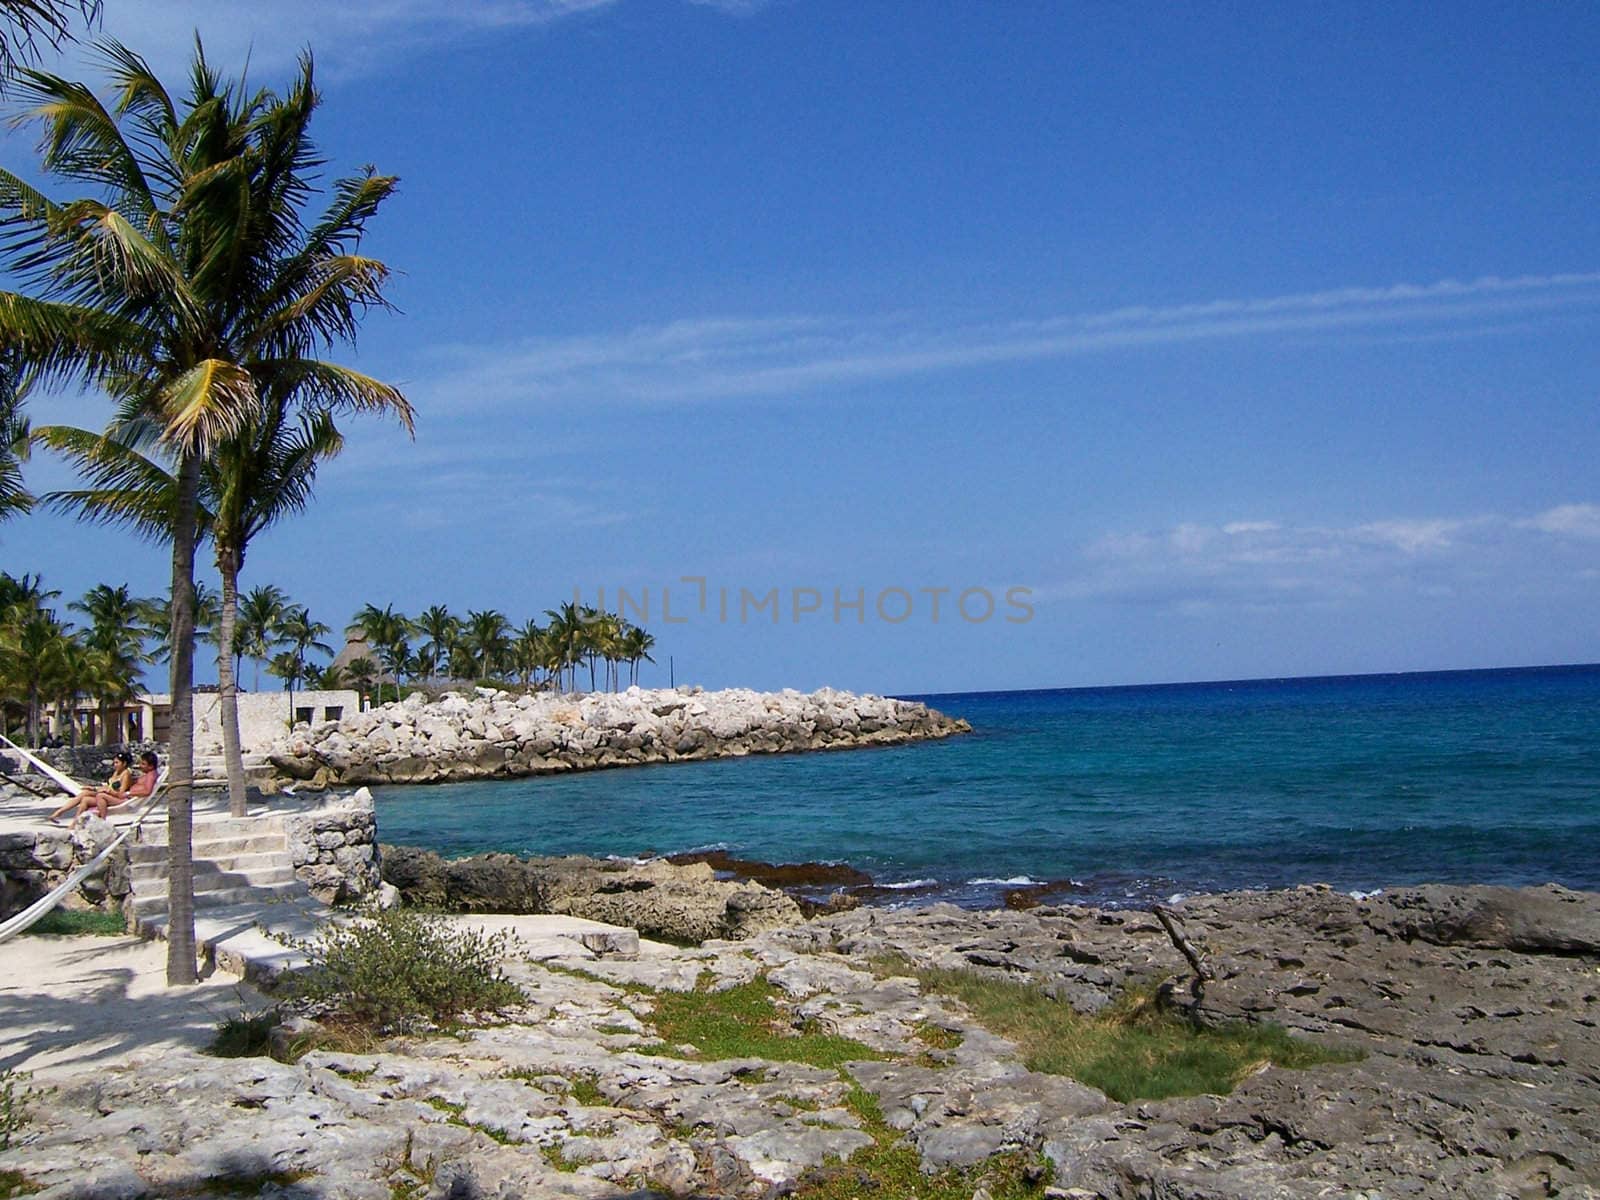 Mexican beach at Yucatan Peninsula with trees, rocks and hammocks.